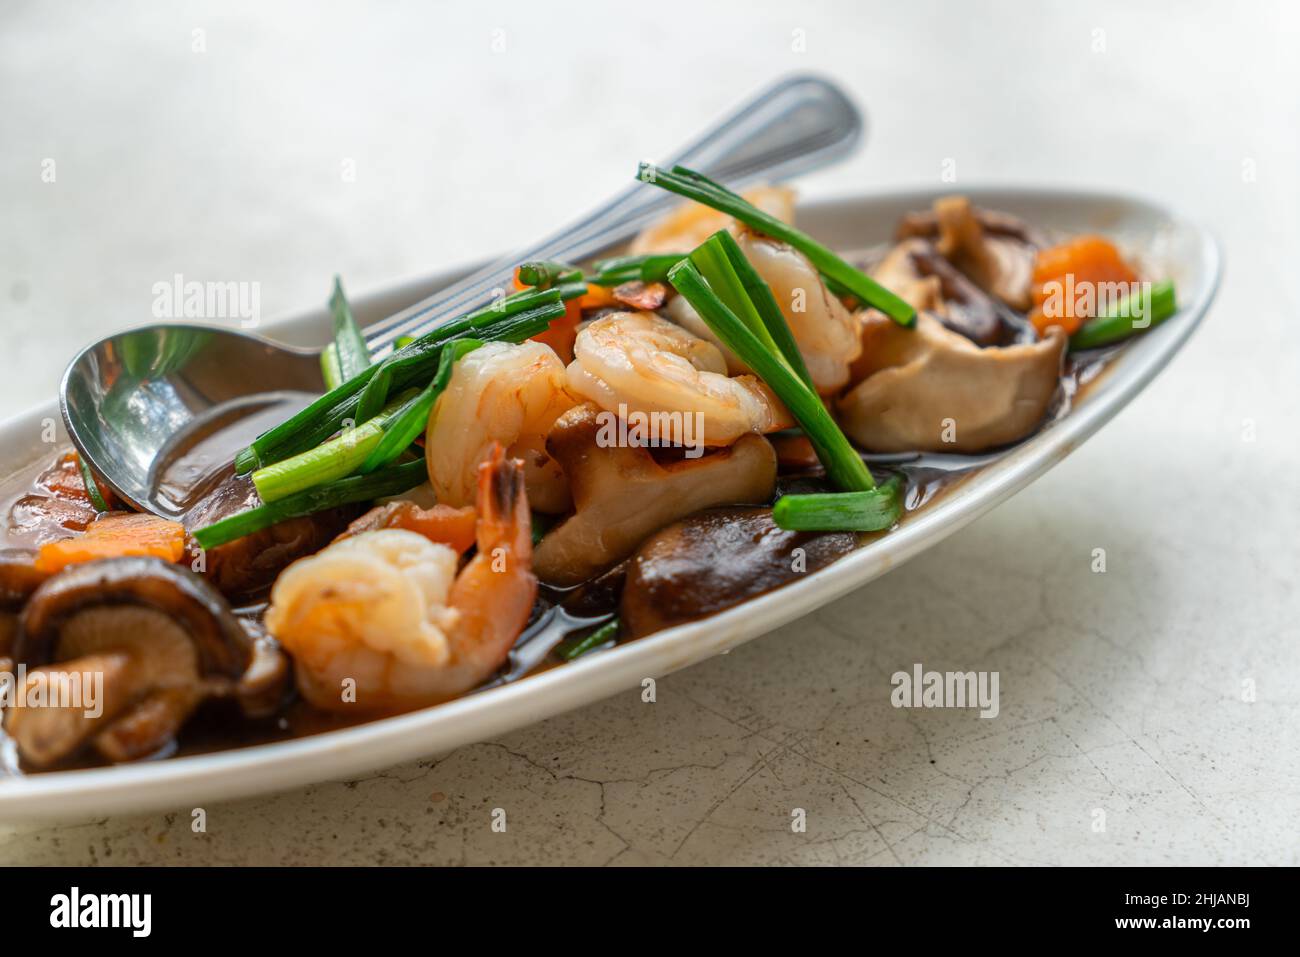 Gamberetti fritti, funghi Shiitake o funghi cinesi con salsa di ostriche in un bellissimo piatto ovale sul tavolo in pietra bianca, immagine ravvicinata Foto Stock